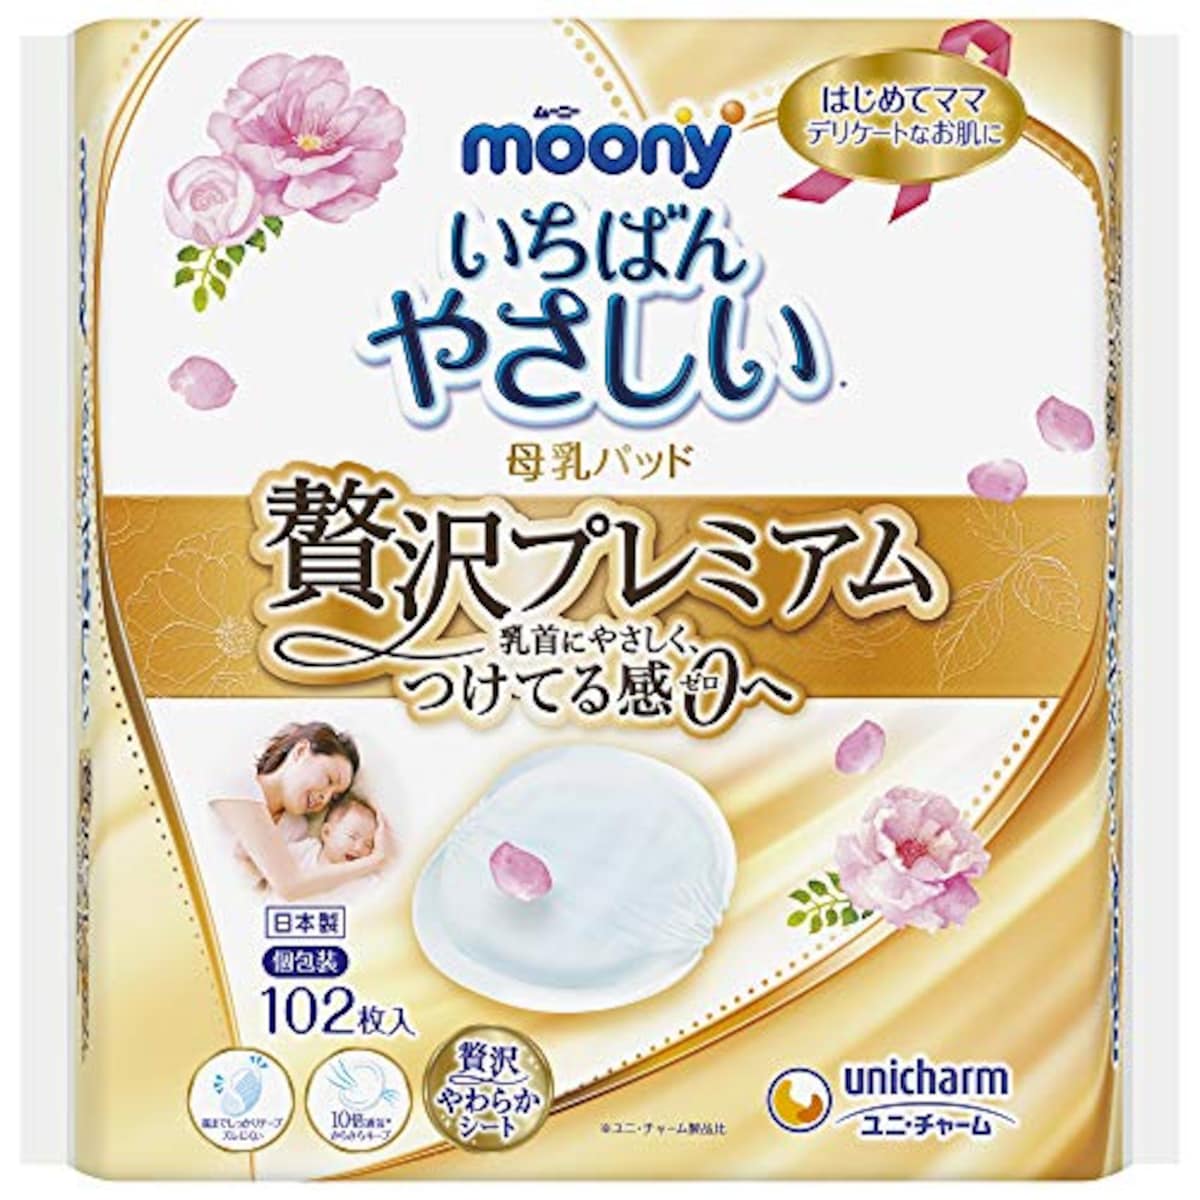 moony（ムーニー）母乳パッド贅沢プレミアム